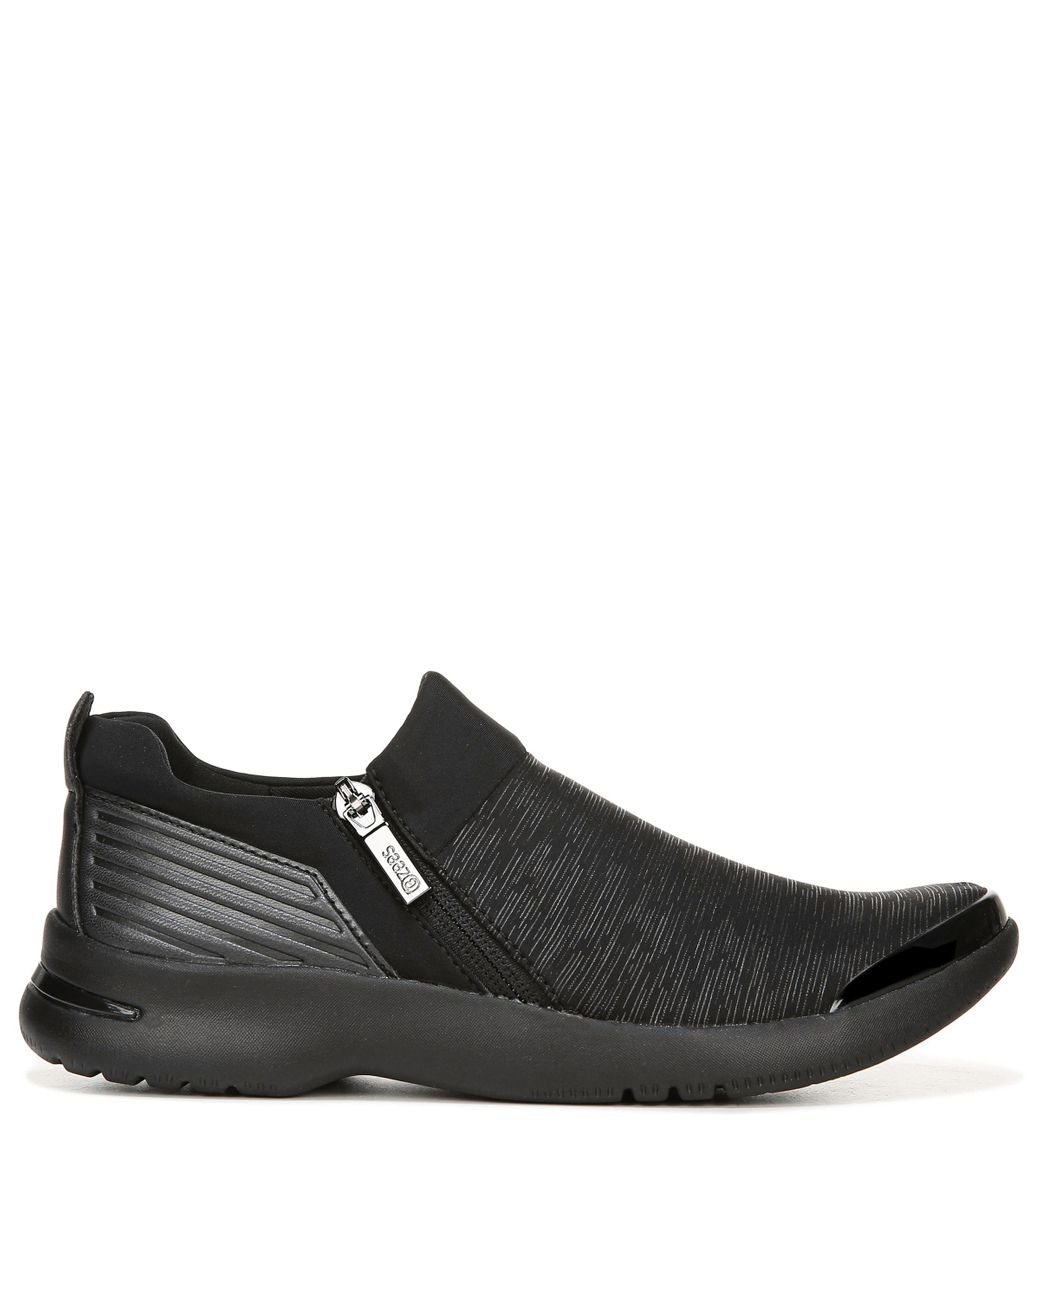 Bzees Axis Medium/wide Slip On Sneakers in Black - Lyst